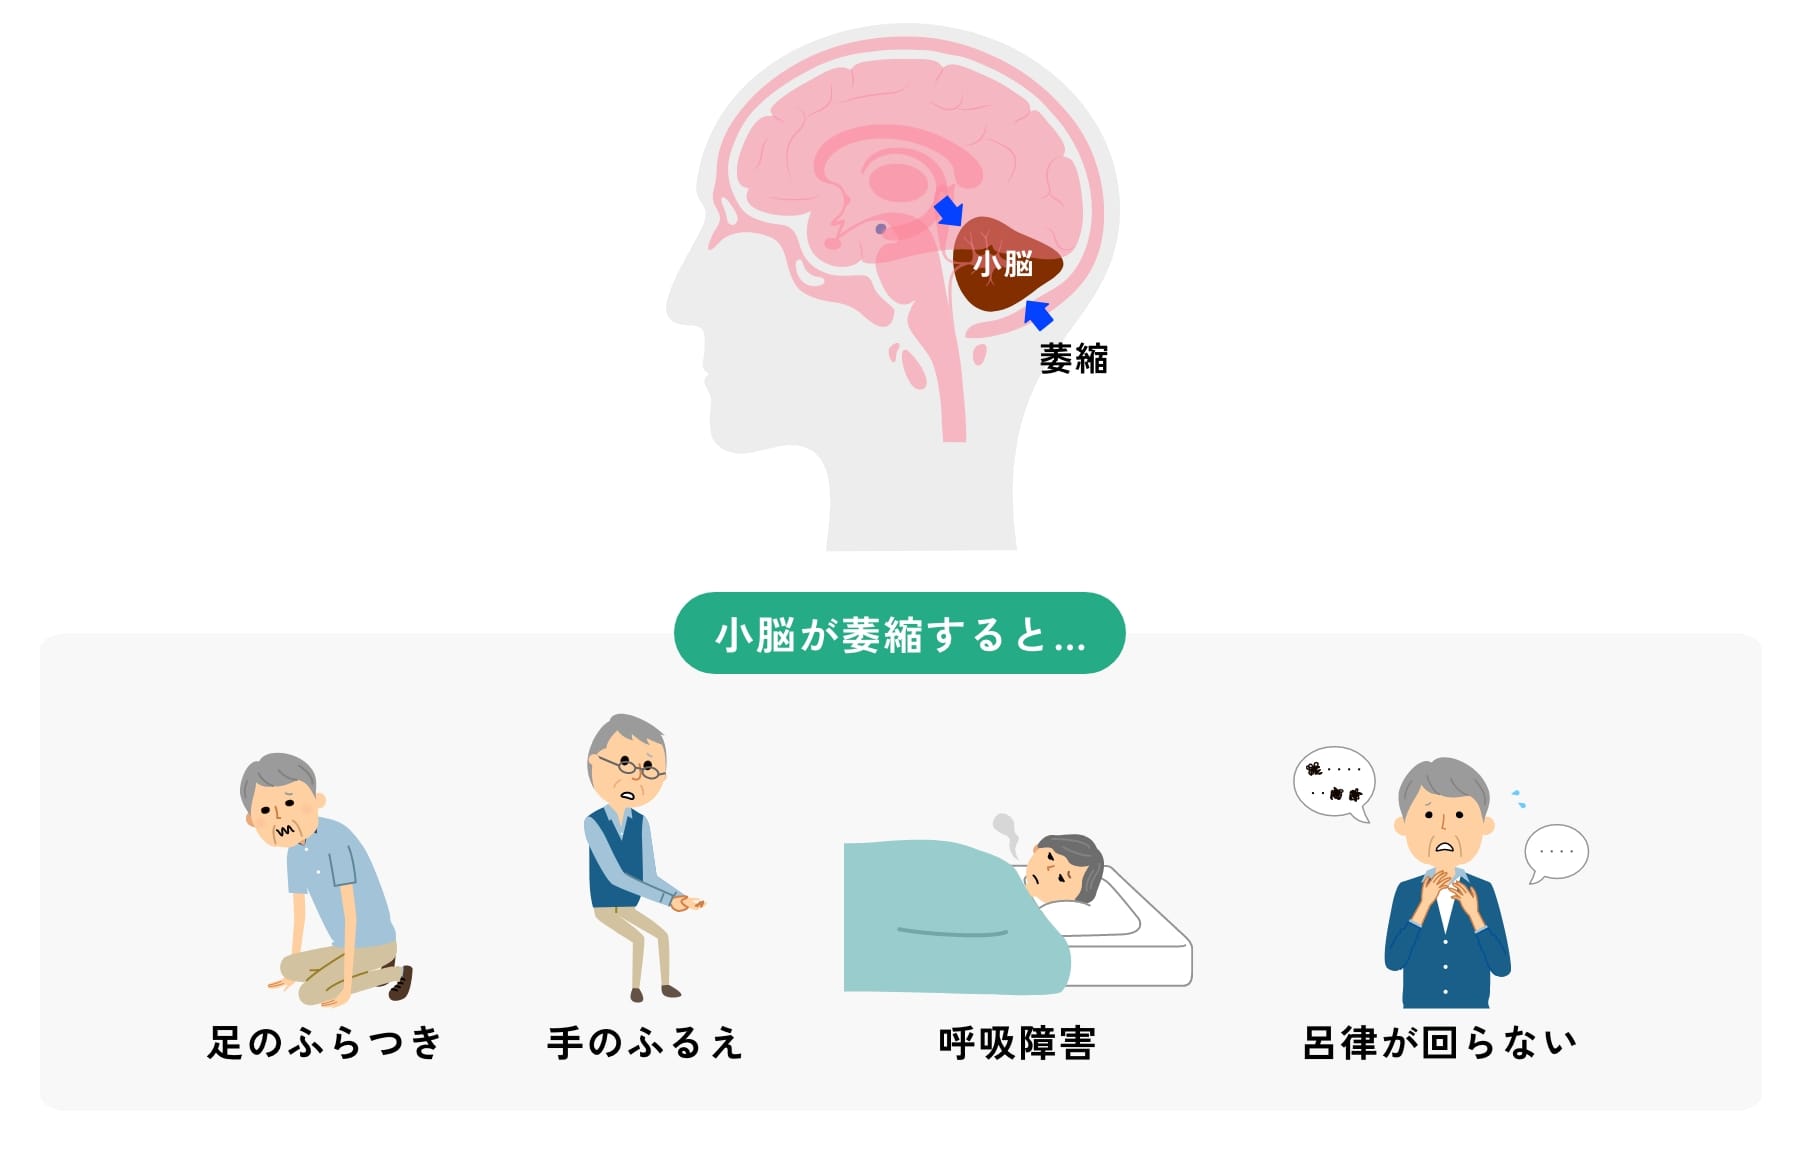 小脳は後頭部の下方に位置します。小脳が萎縮すると「足のふらつき」「手の震え」「呼吸障害」そして「呂律が回らない」などの症状が現れます。